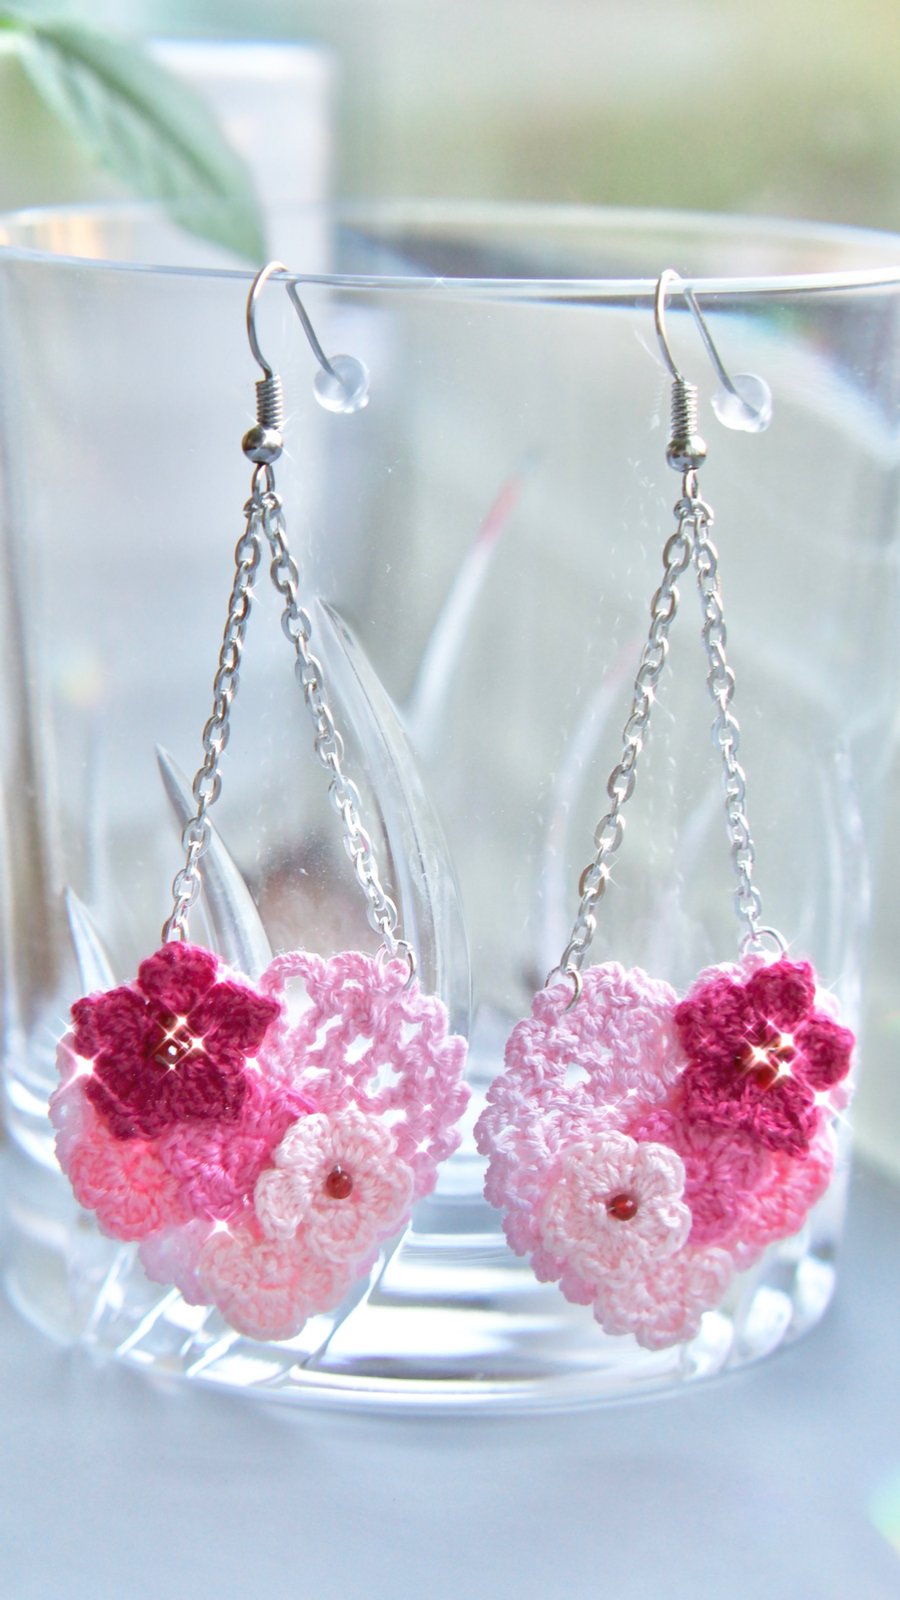 Sweet hearts microcrochet pink flowers earrings